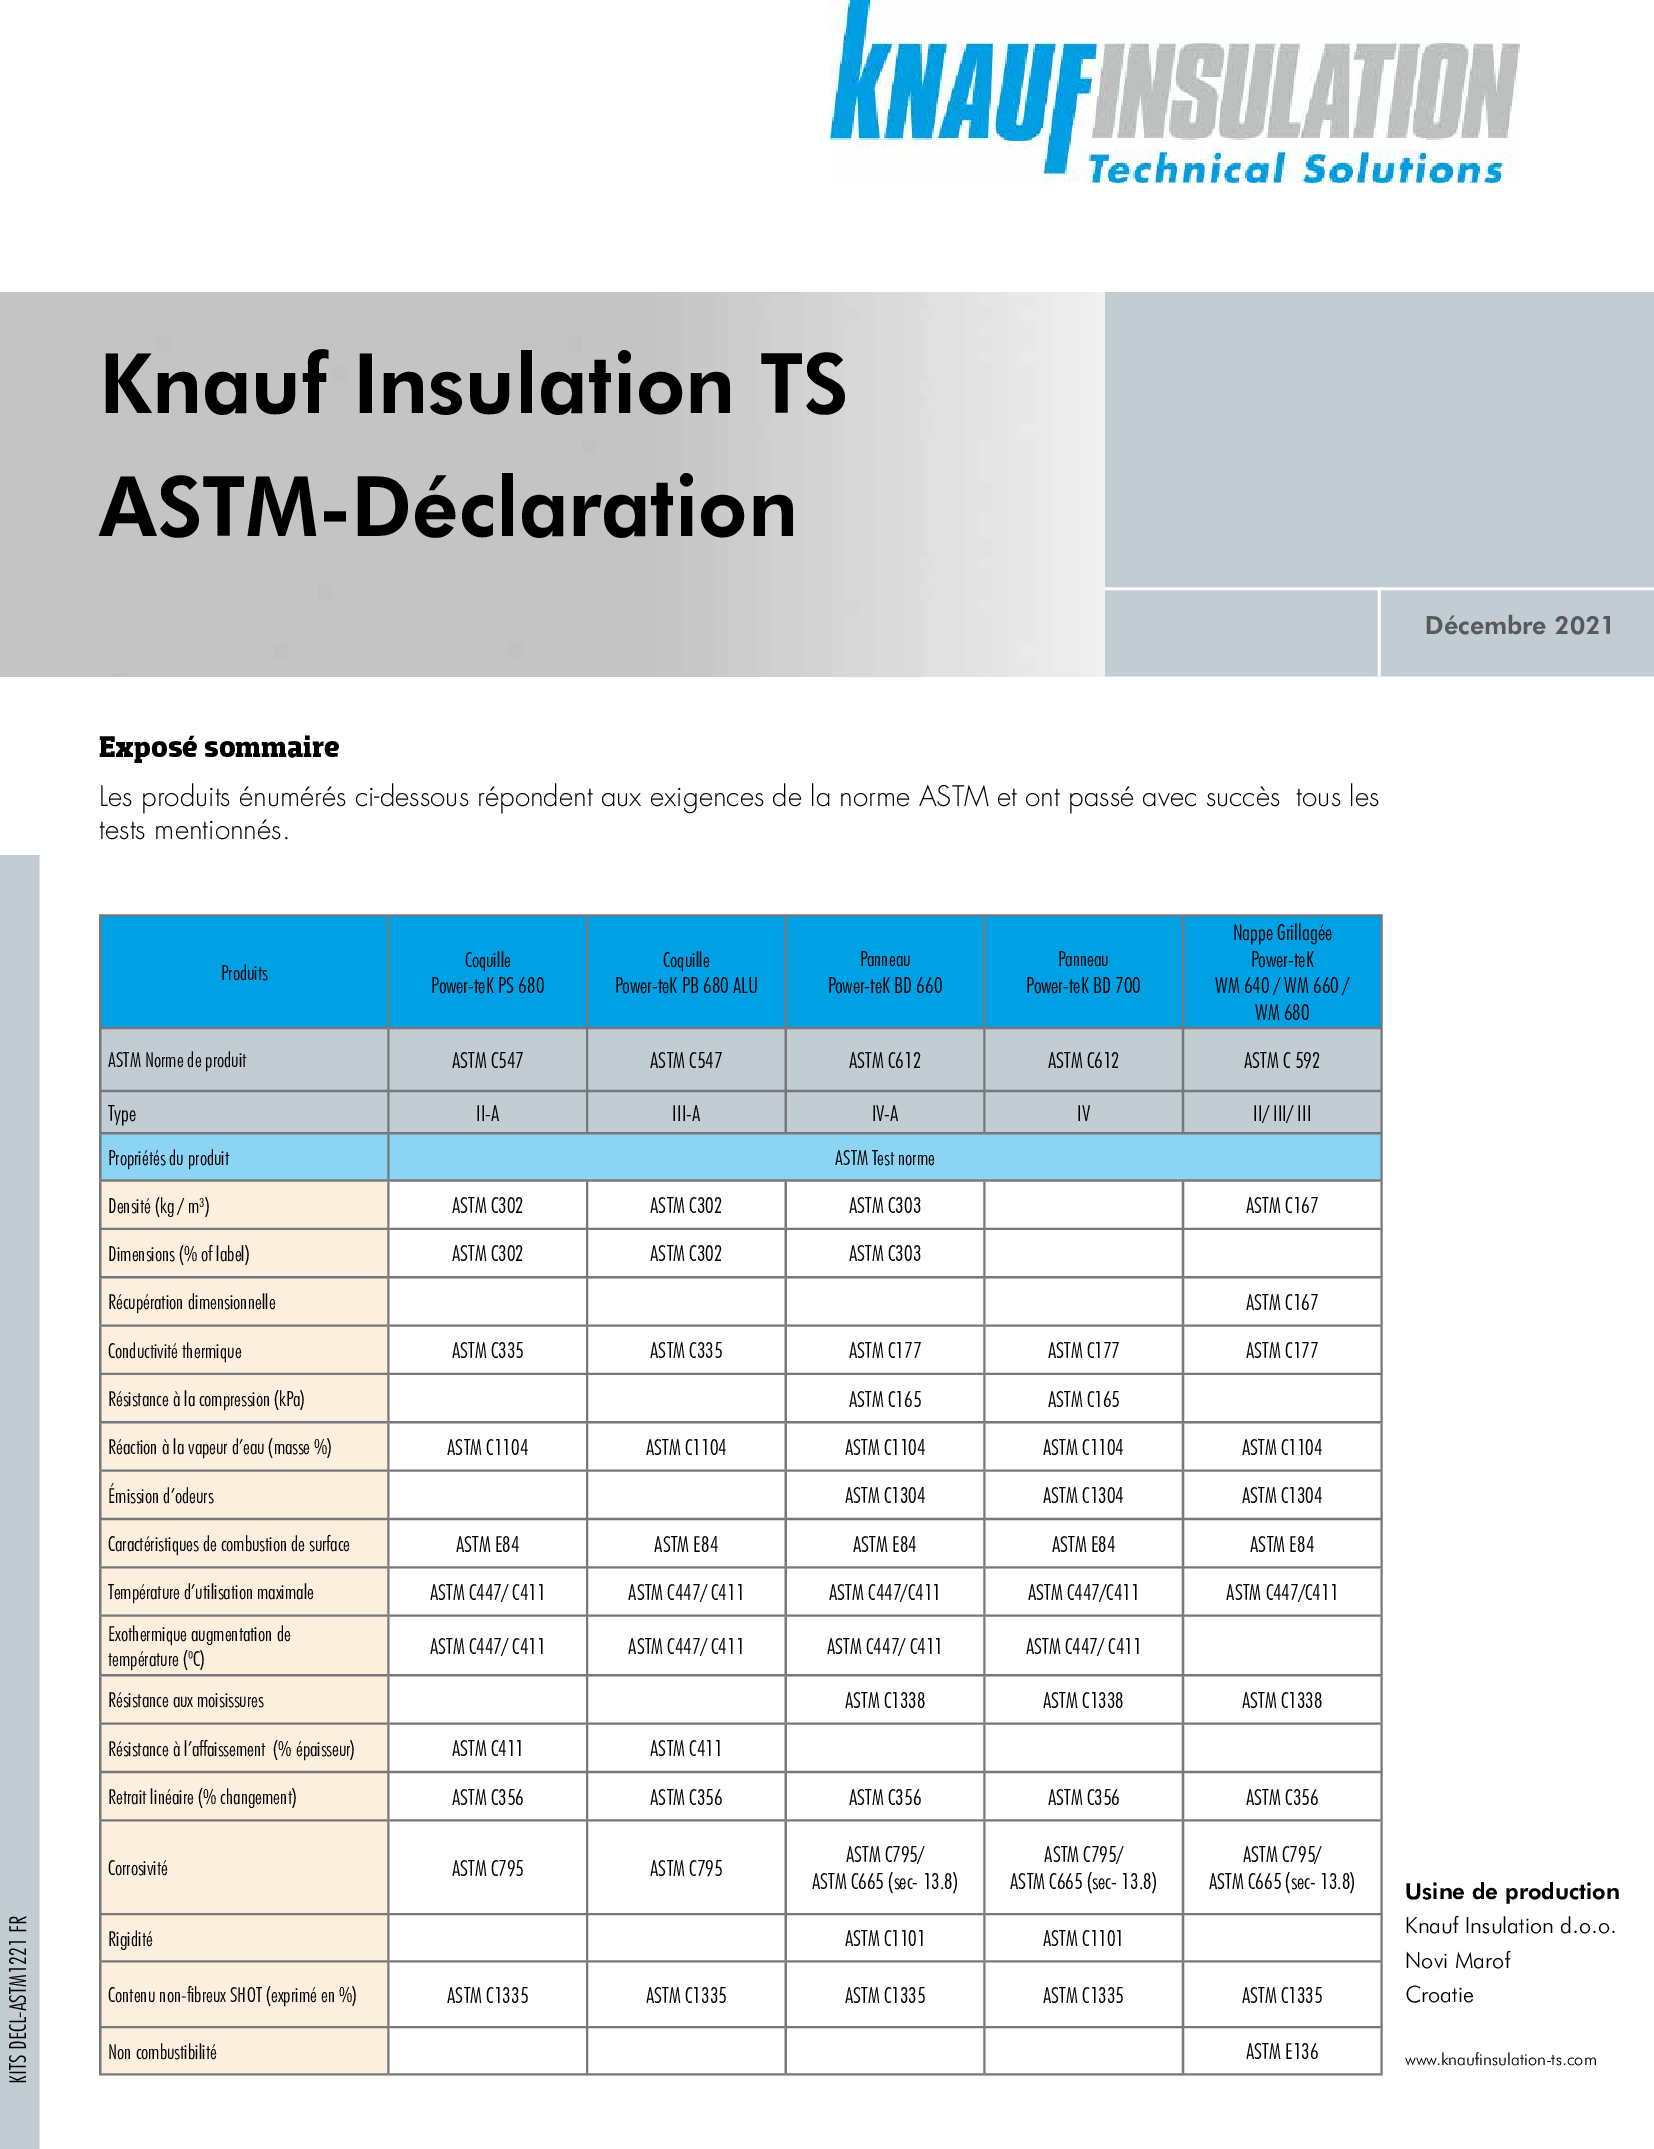 ASTM-Déclaration